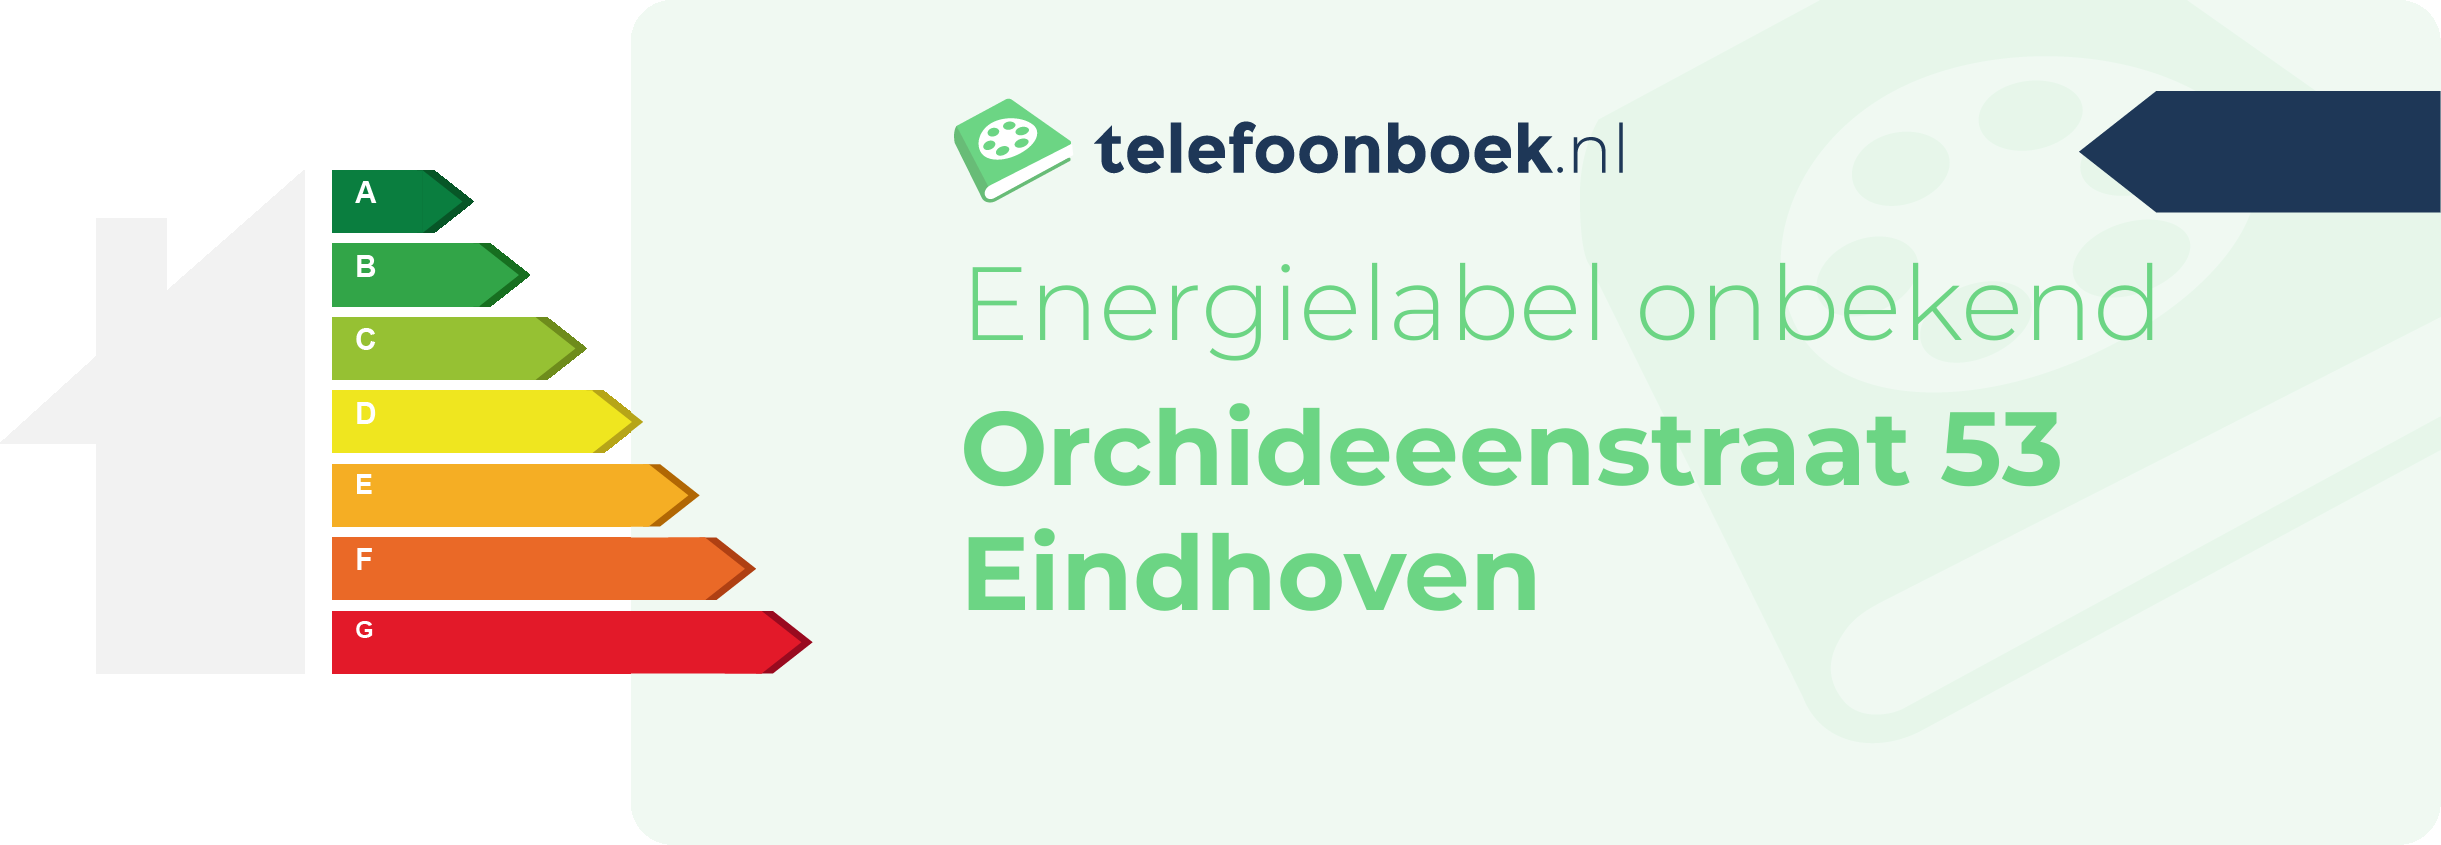 Energielabel Orchideeenstraat 53 Eindhoven